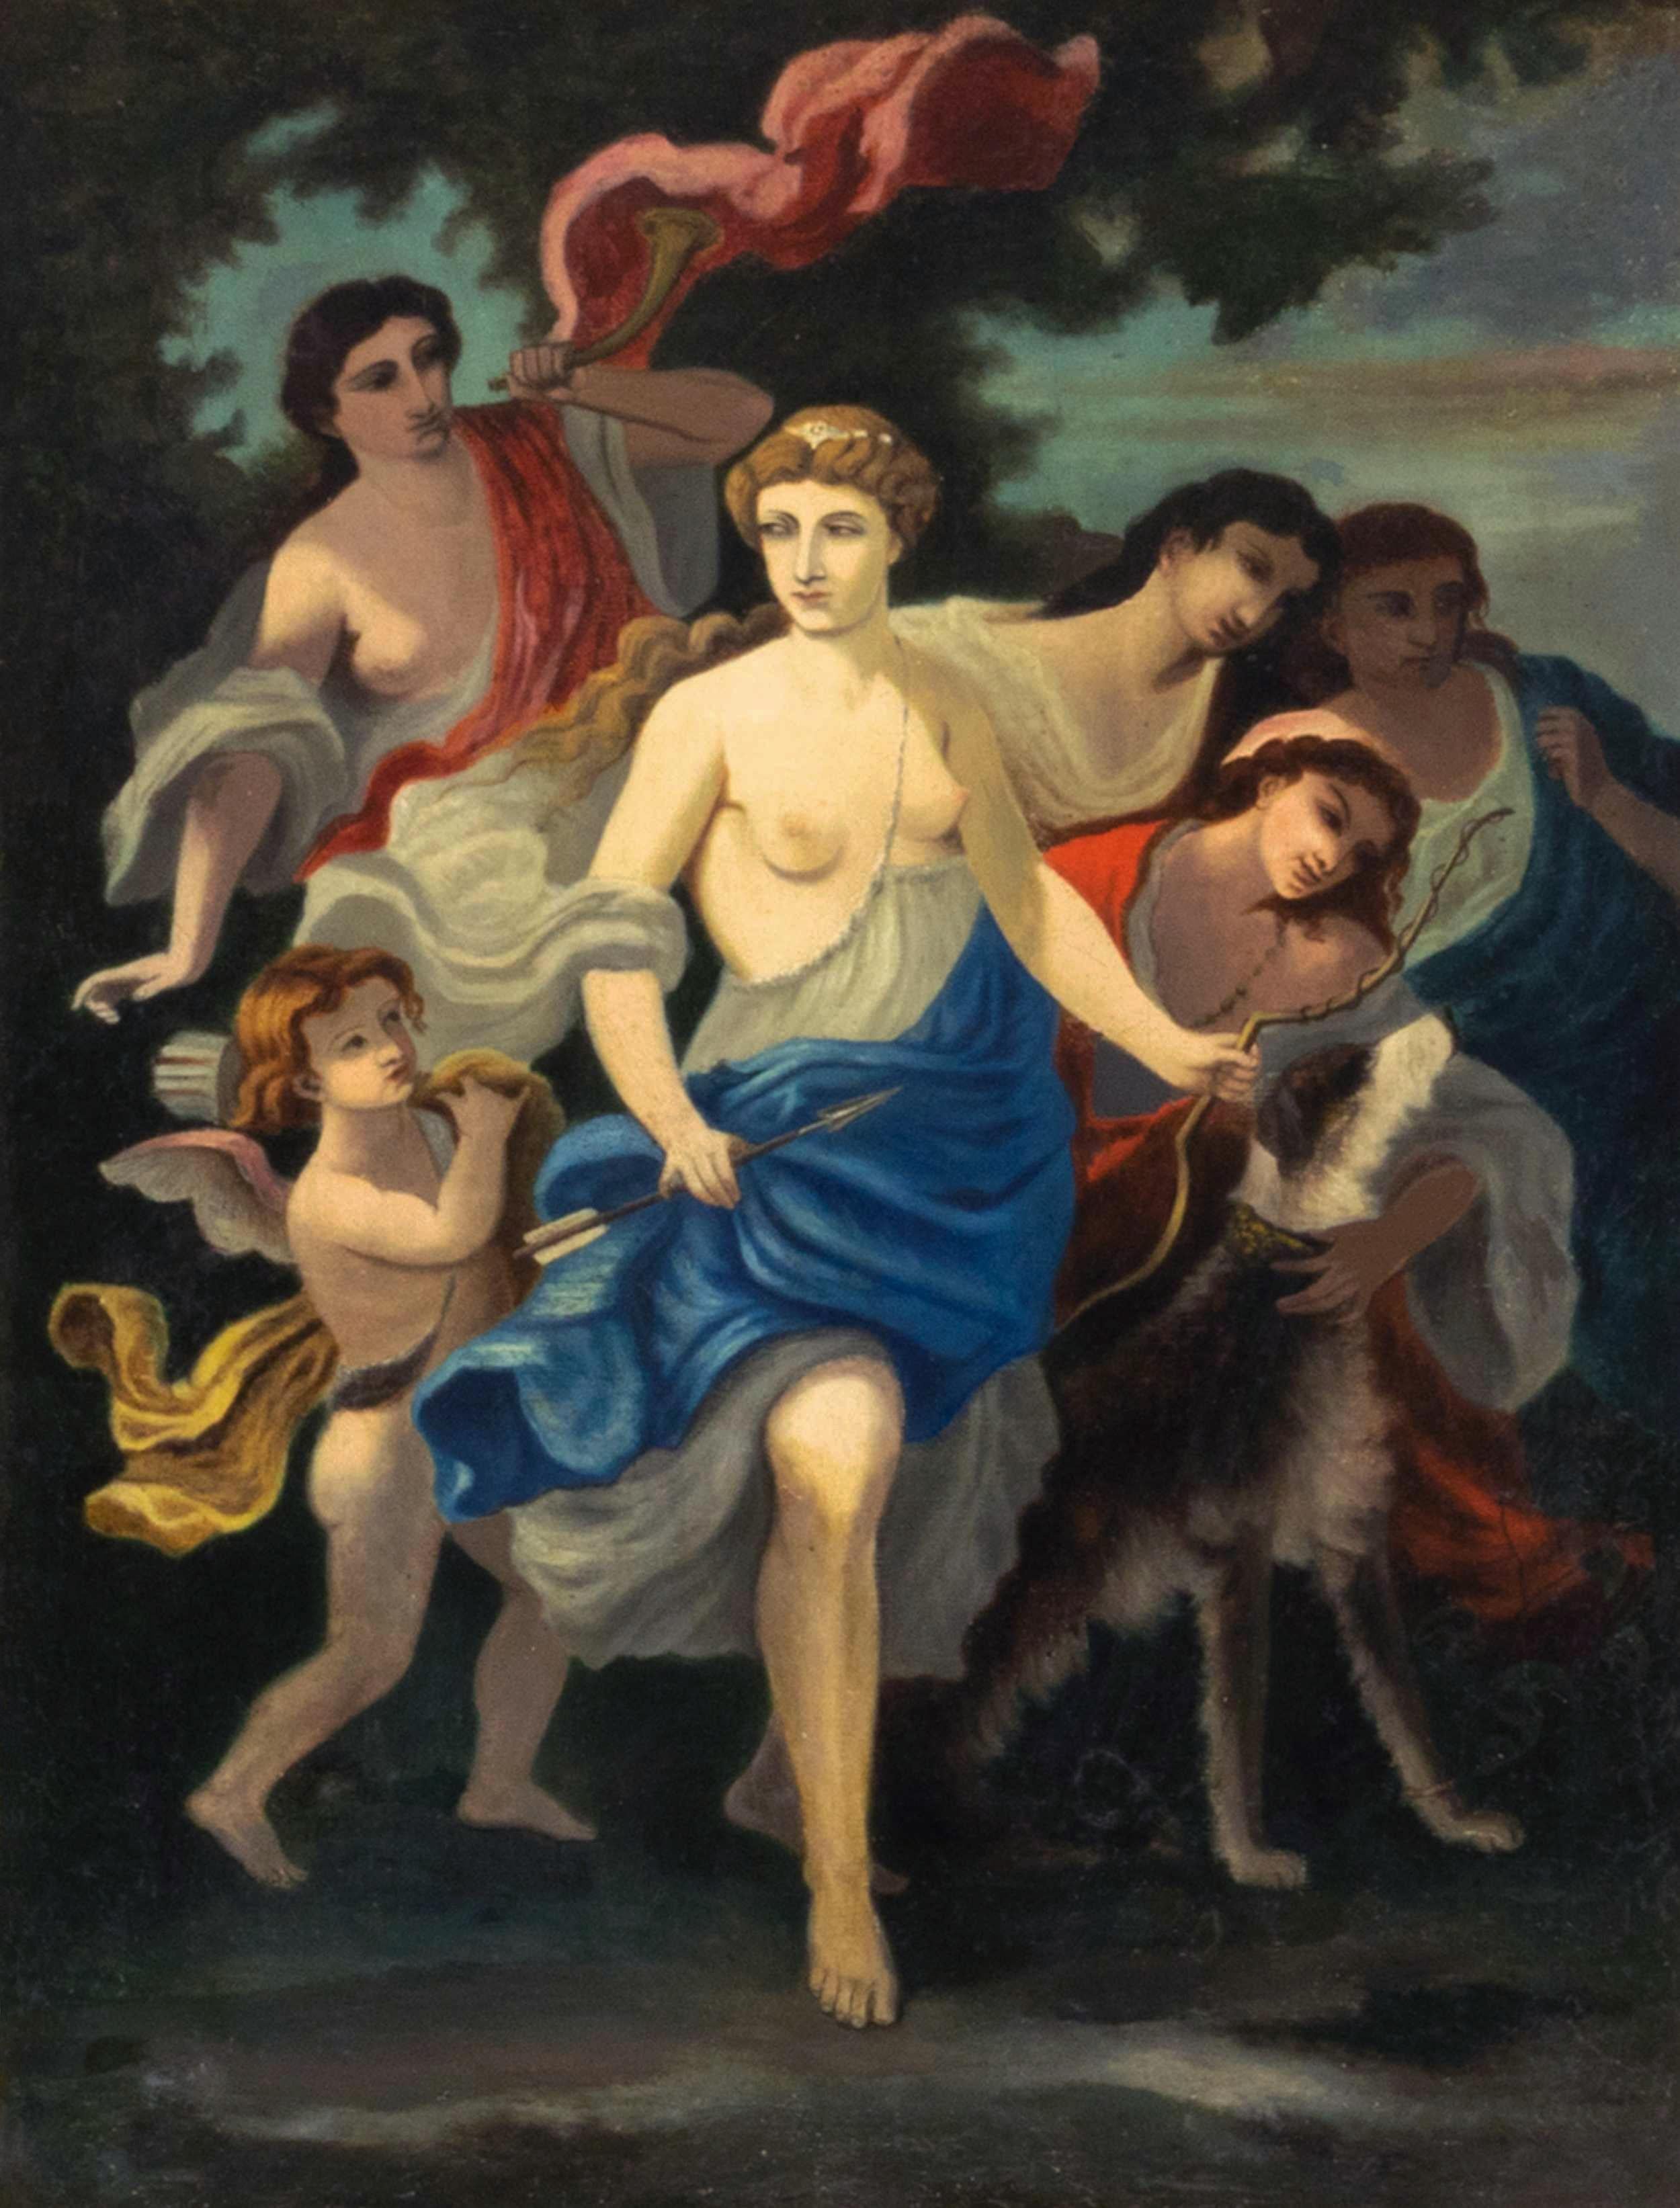 Ein großartiges Gemälde einer klassischen Mythologie-Szene. 
Diana, die Göttin, und die Nymphen Urania und Kalliope mit einer Jagd
Hund. Sehr genau gezeichnete Figuren im Vordergrund, weiche Pinselstriche, die die Oberfläche des Gemäldes poliert